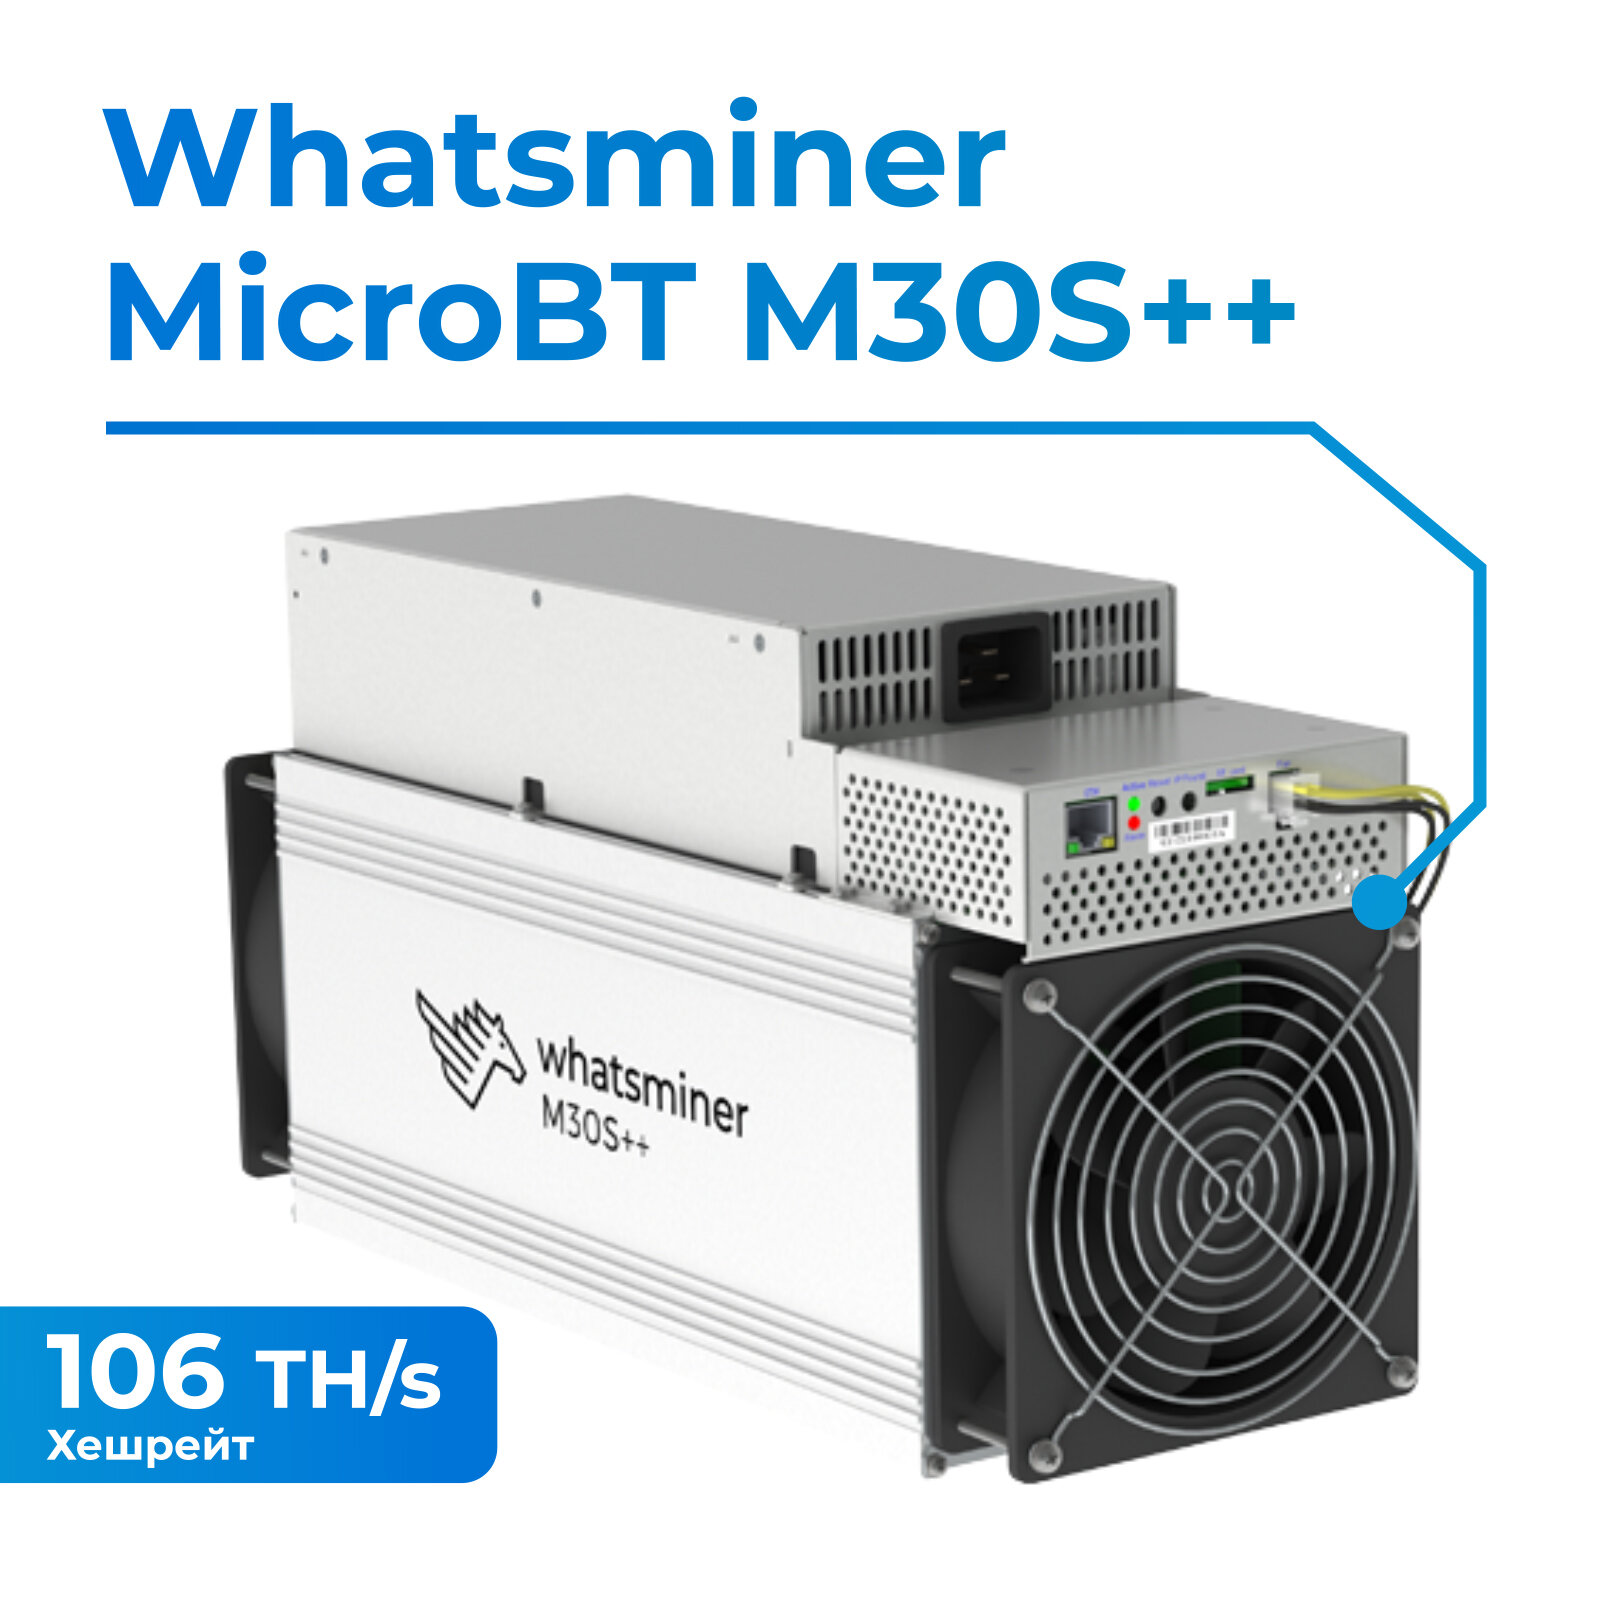 Асик Whatsminer M30S++ 106TH/s для майнинга криптовалюты + кабель в подарок!